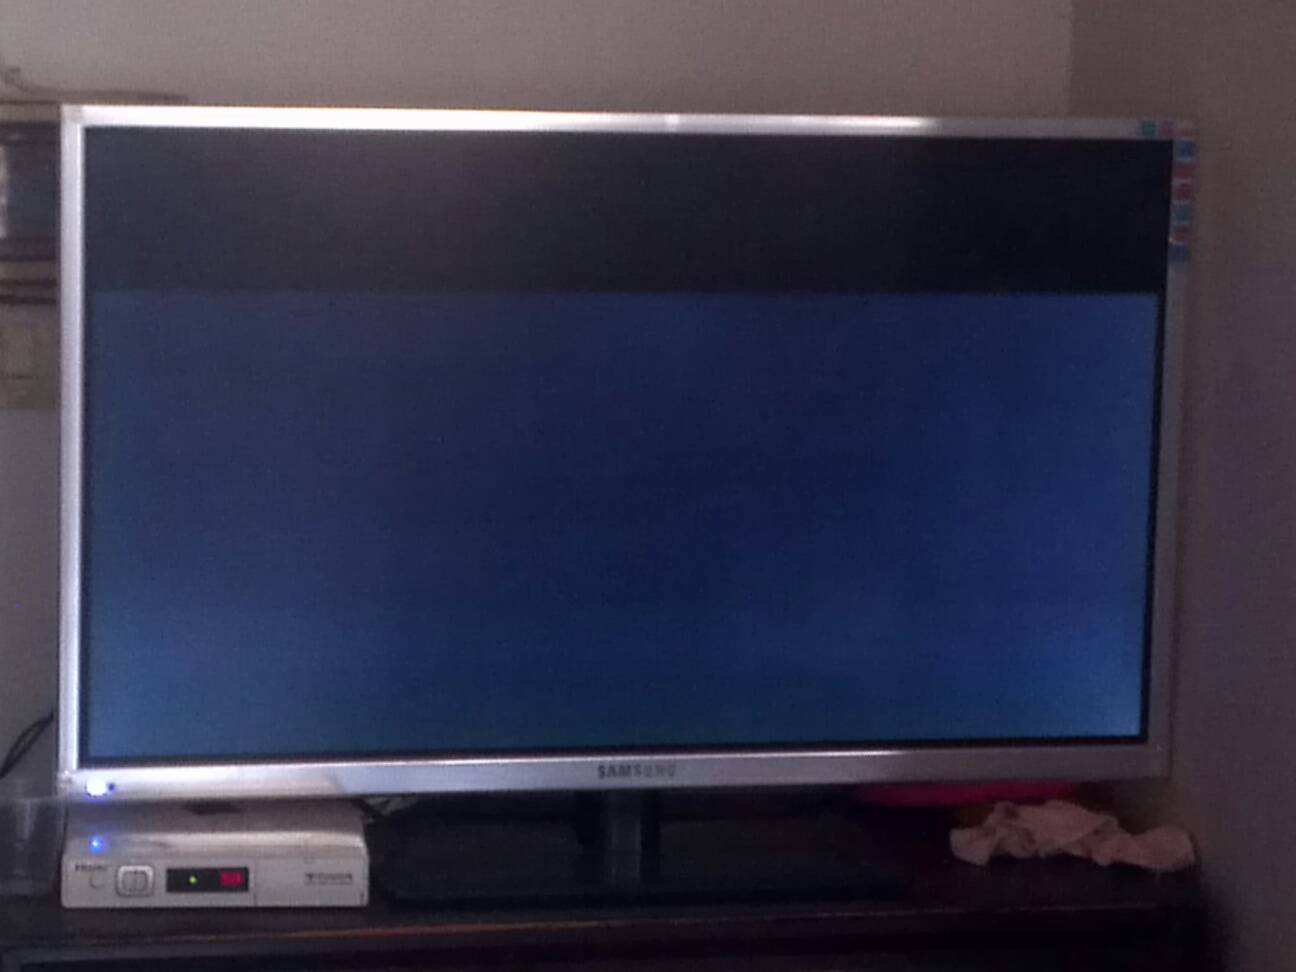 老式电视显示屏不亮怎么办